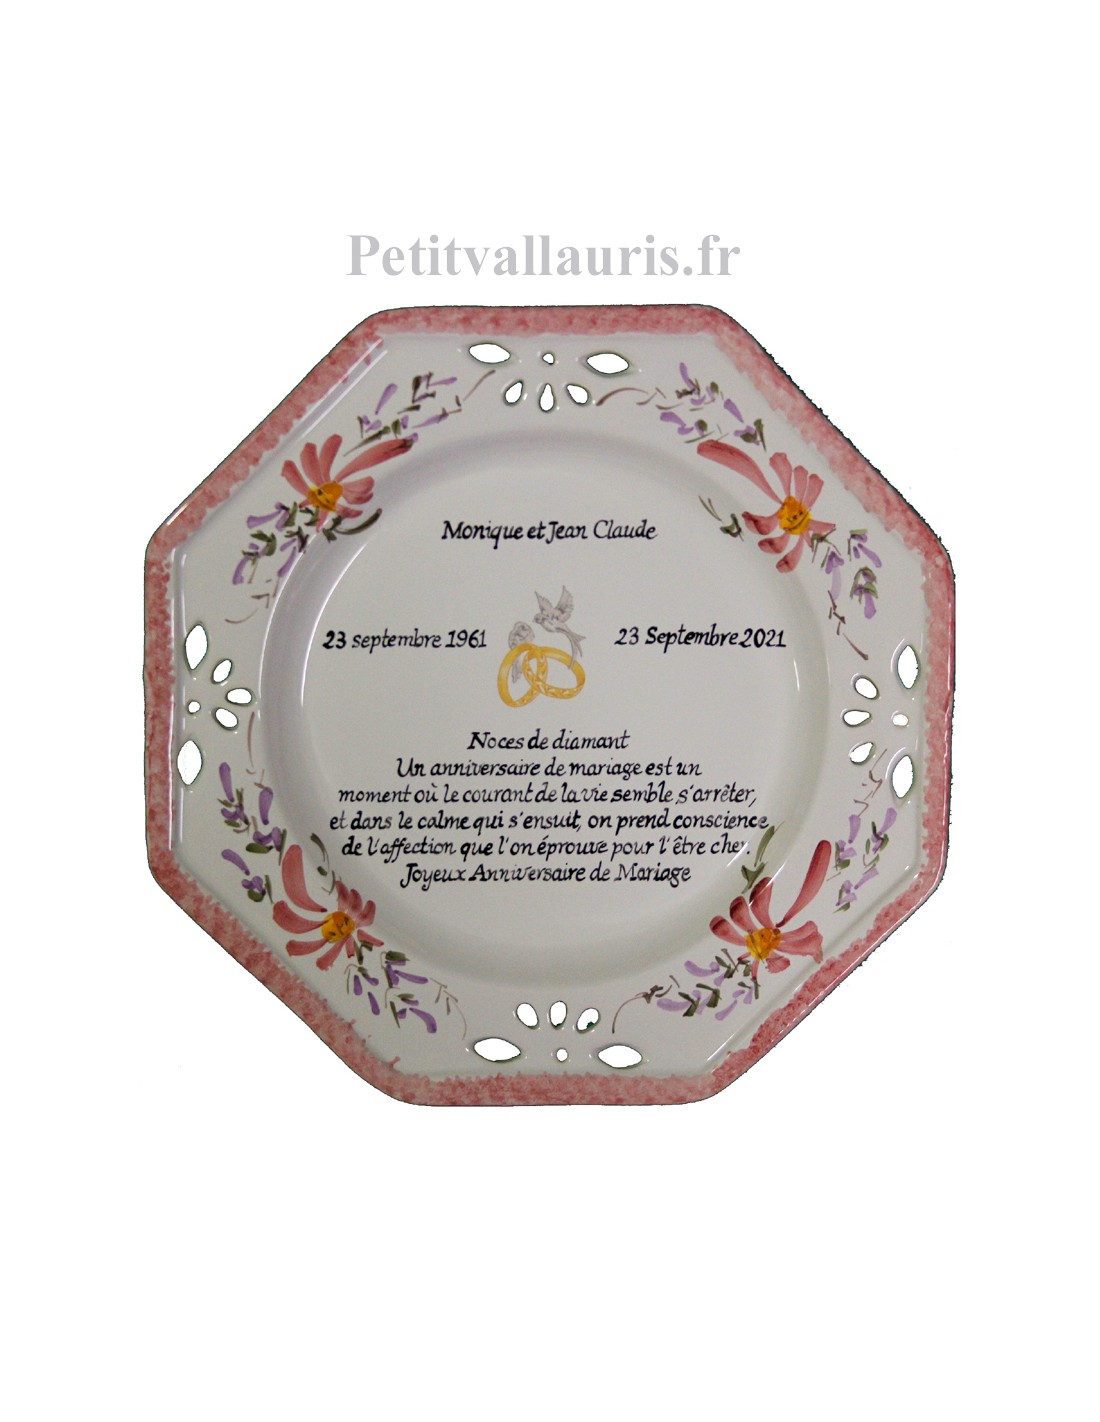 Grande assiette anniversaire 60 ans de Mariage modèle octogonale noces de  diamant motifs fleurs roses